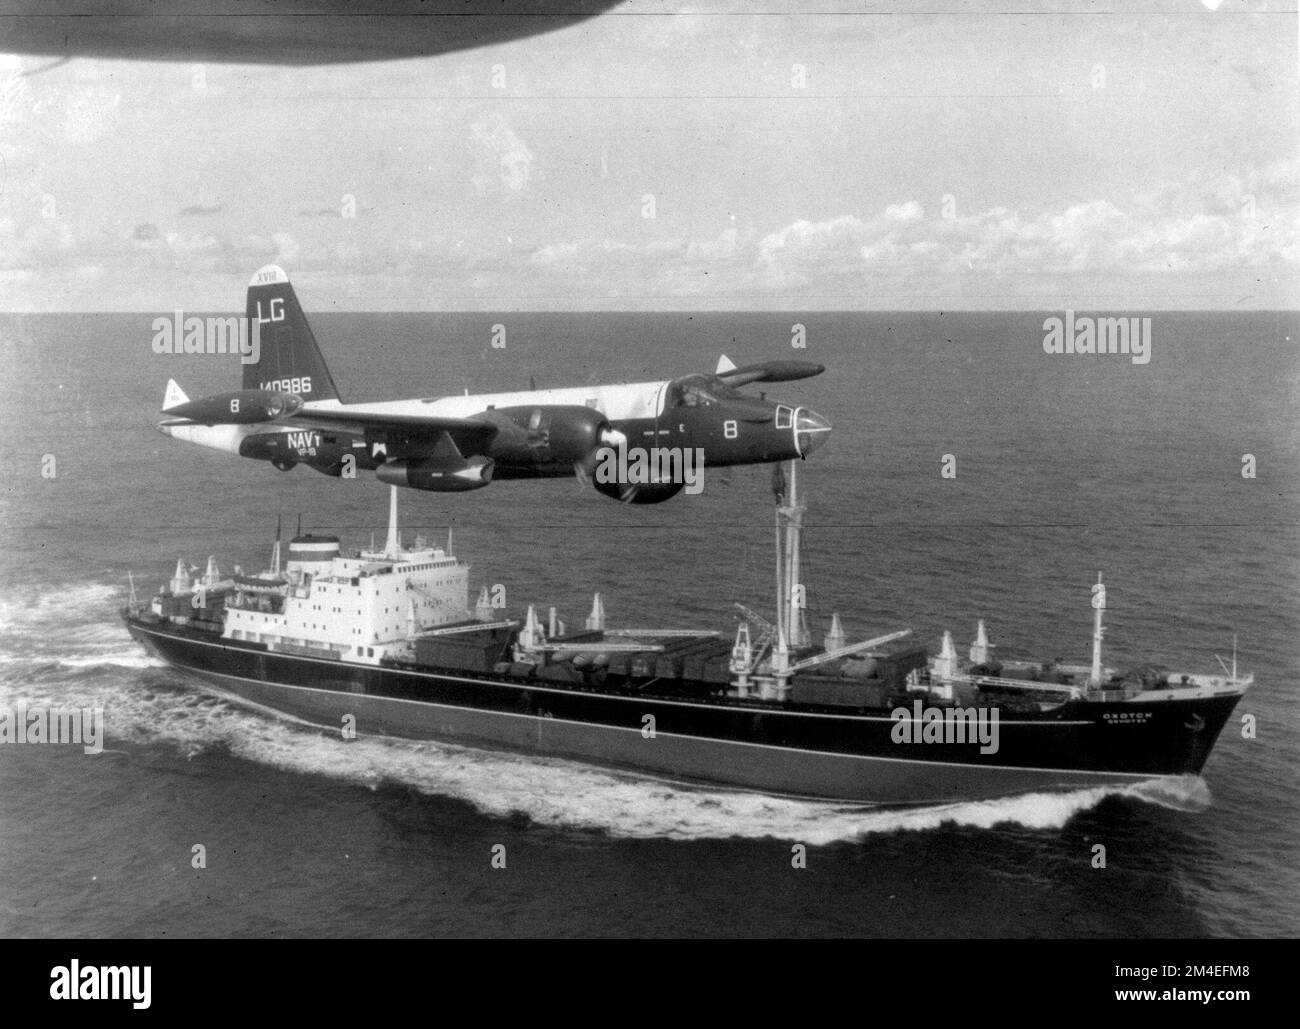 Un P-2H Neptune de la marine américaine du VP-18 survolant un cargo soviétique avec des bombardiers Ilyushin il-28 sur le pont pendant la crise cubaine Banque D'Images